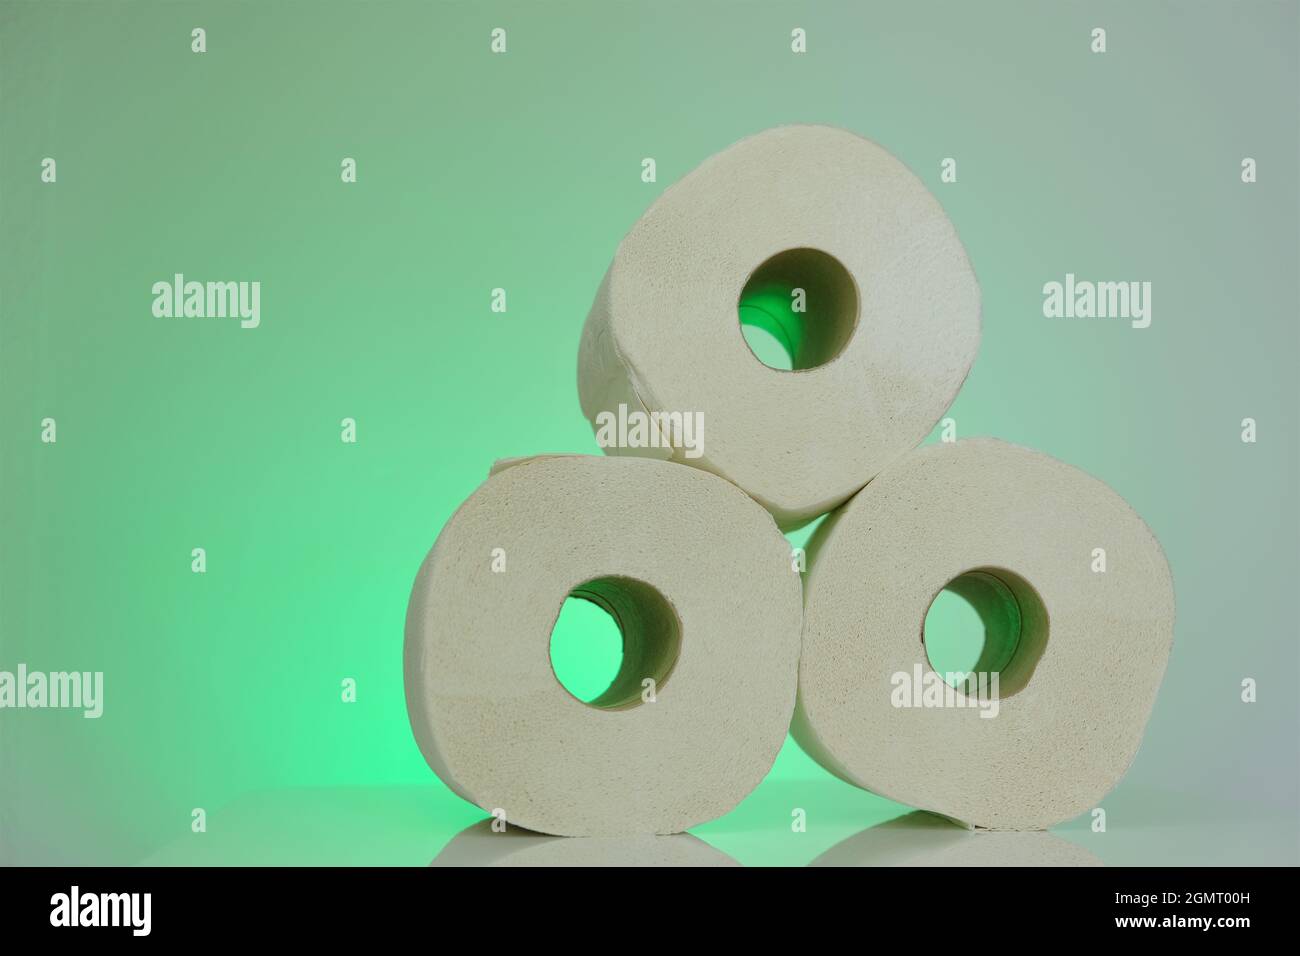 Rouleaux de papier toilette .rouleaux de papier toilette bio biologique sur fond vert clair.concept d'hygiène et de propreté Banque D'Images